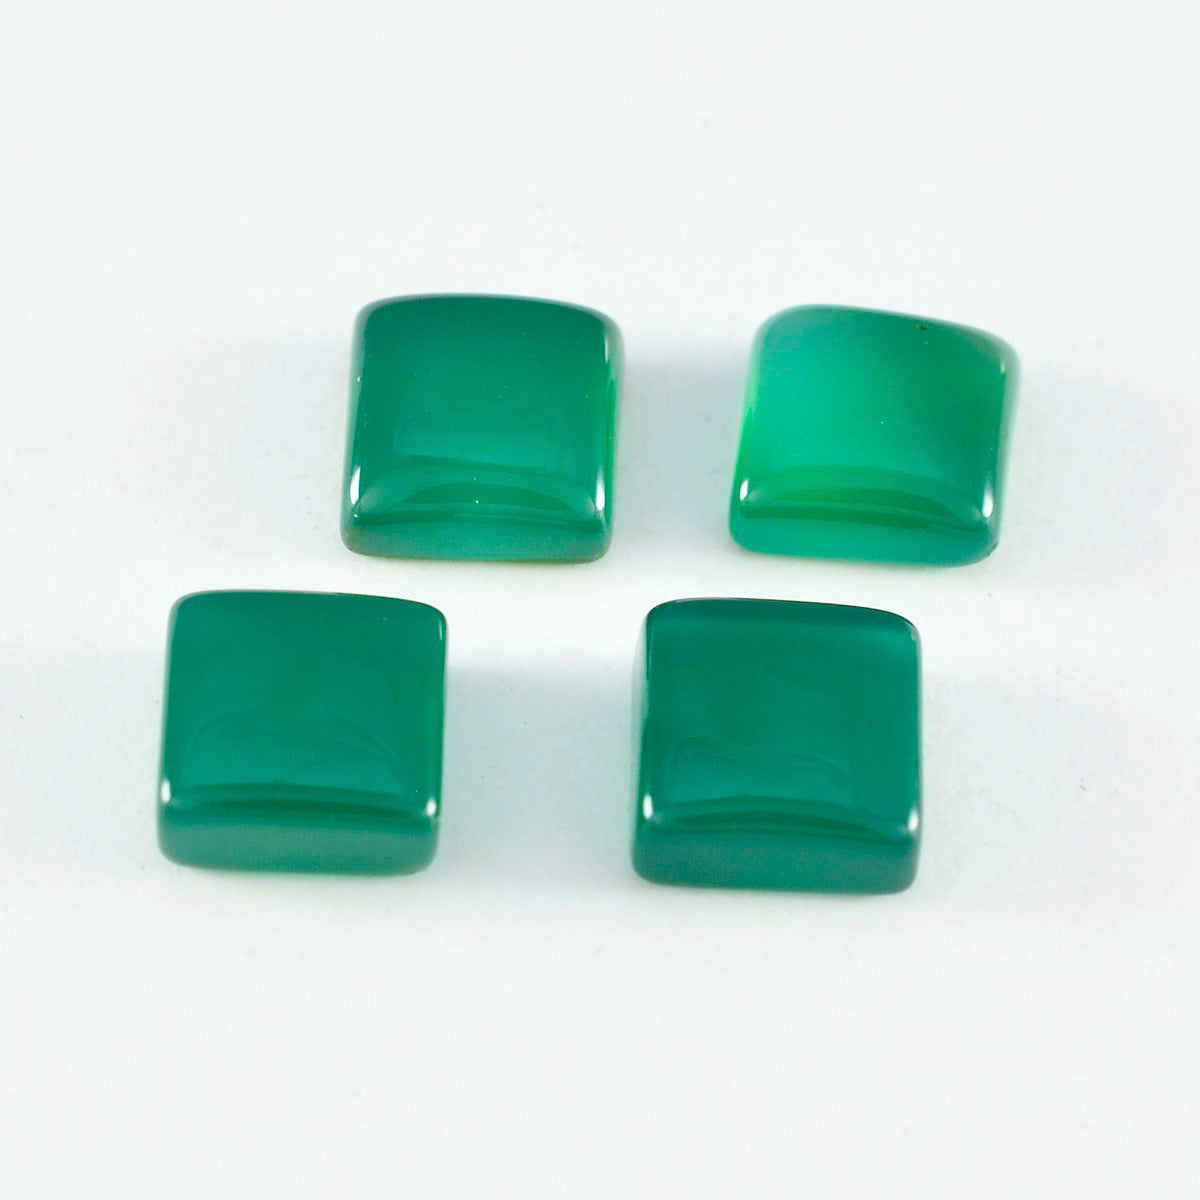 Riyogems 1PC groene onyx cabochon 15x15 mm vierkante vorm mooie kwaliteit losse steen